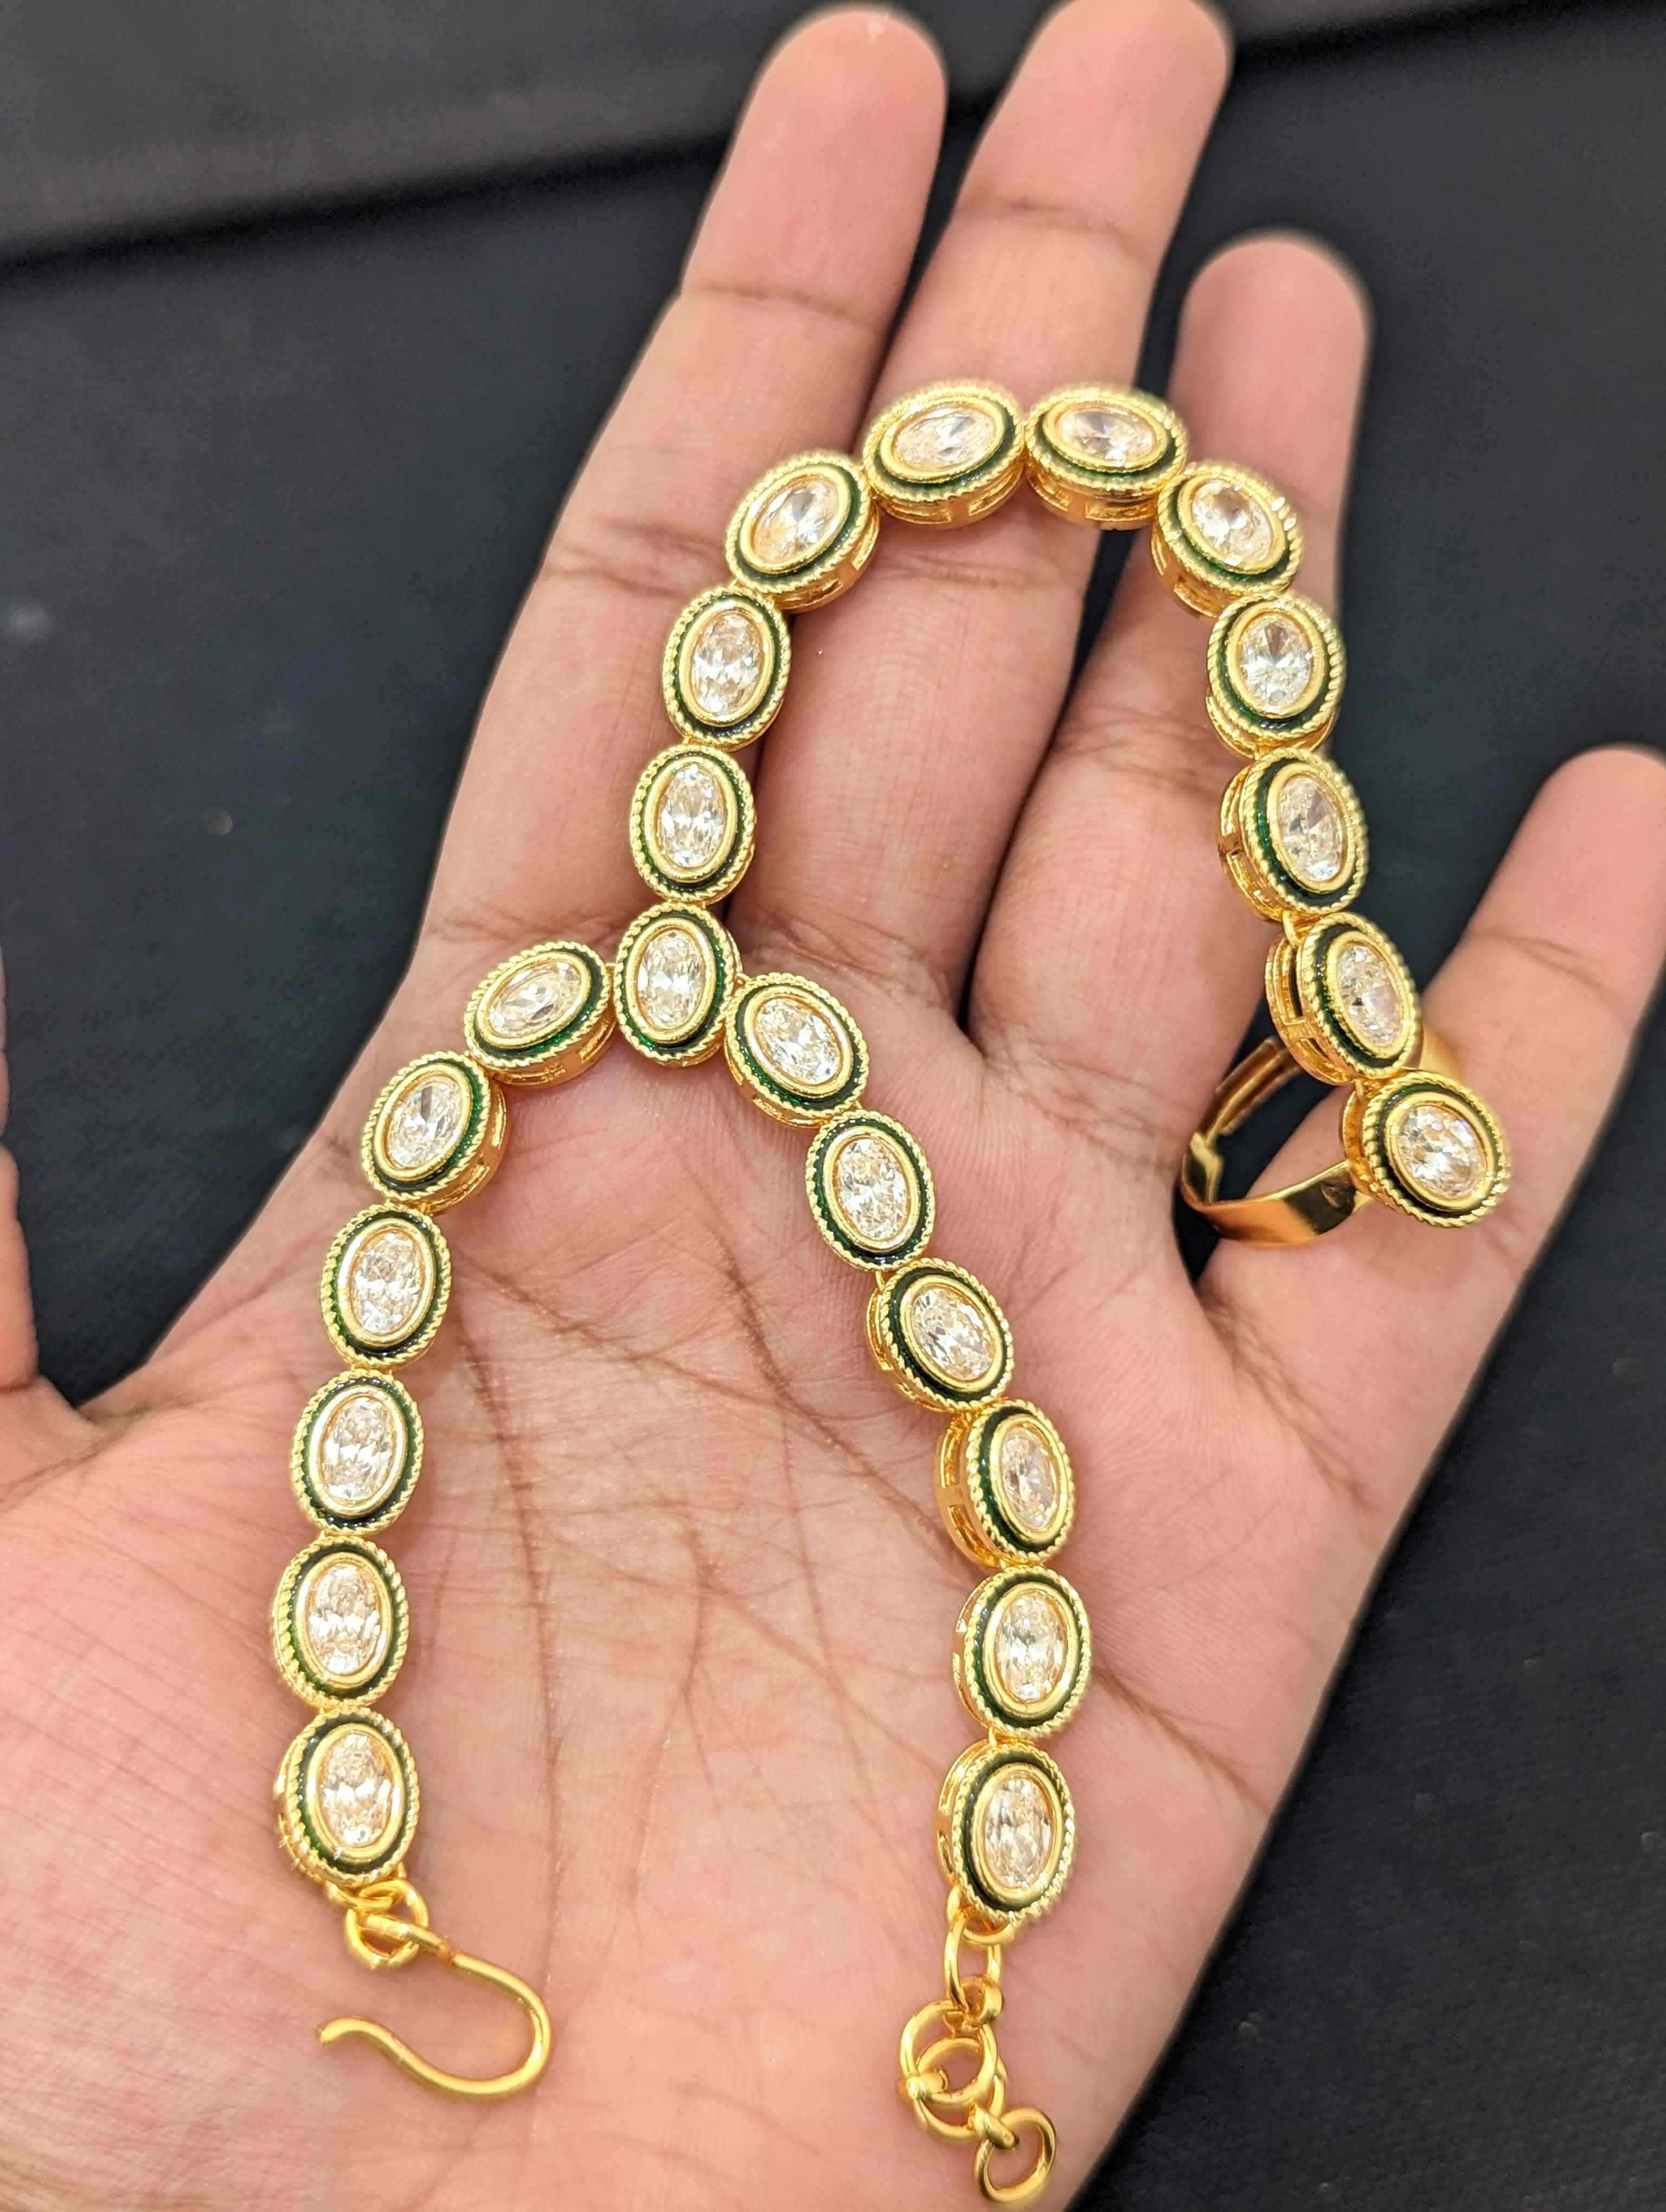 Oval Link Chain Bracelet in 18K Yellow Gold, 17mm | David Yurman